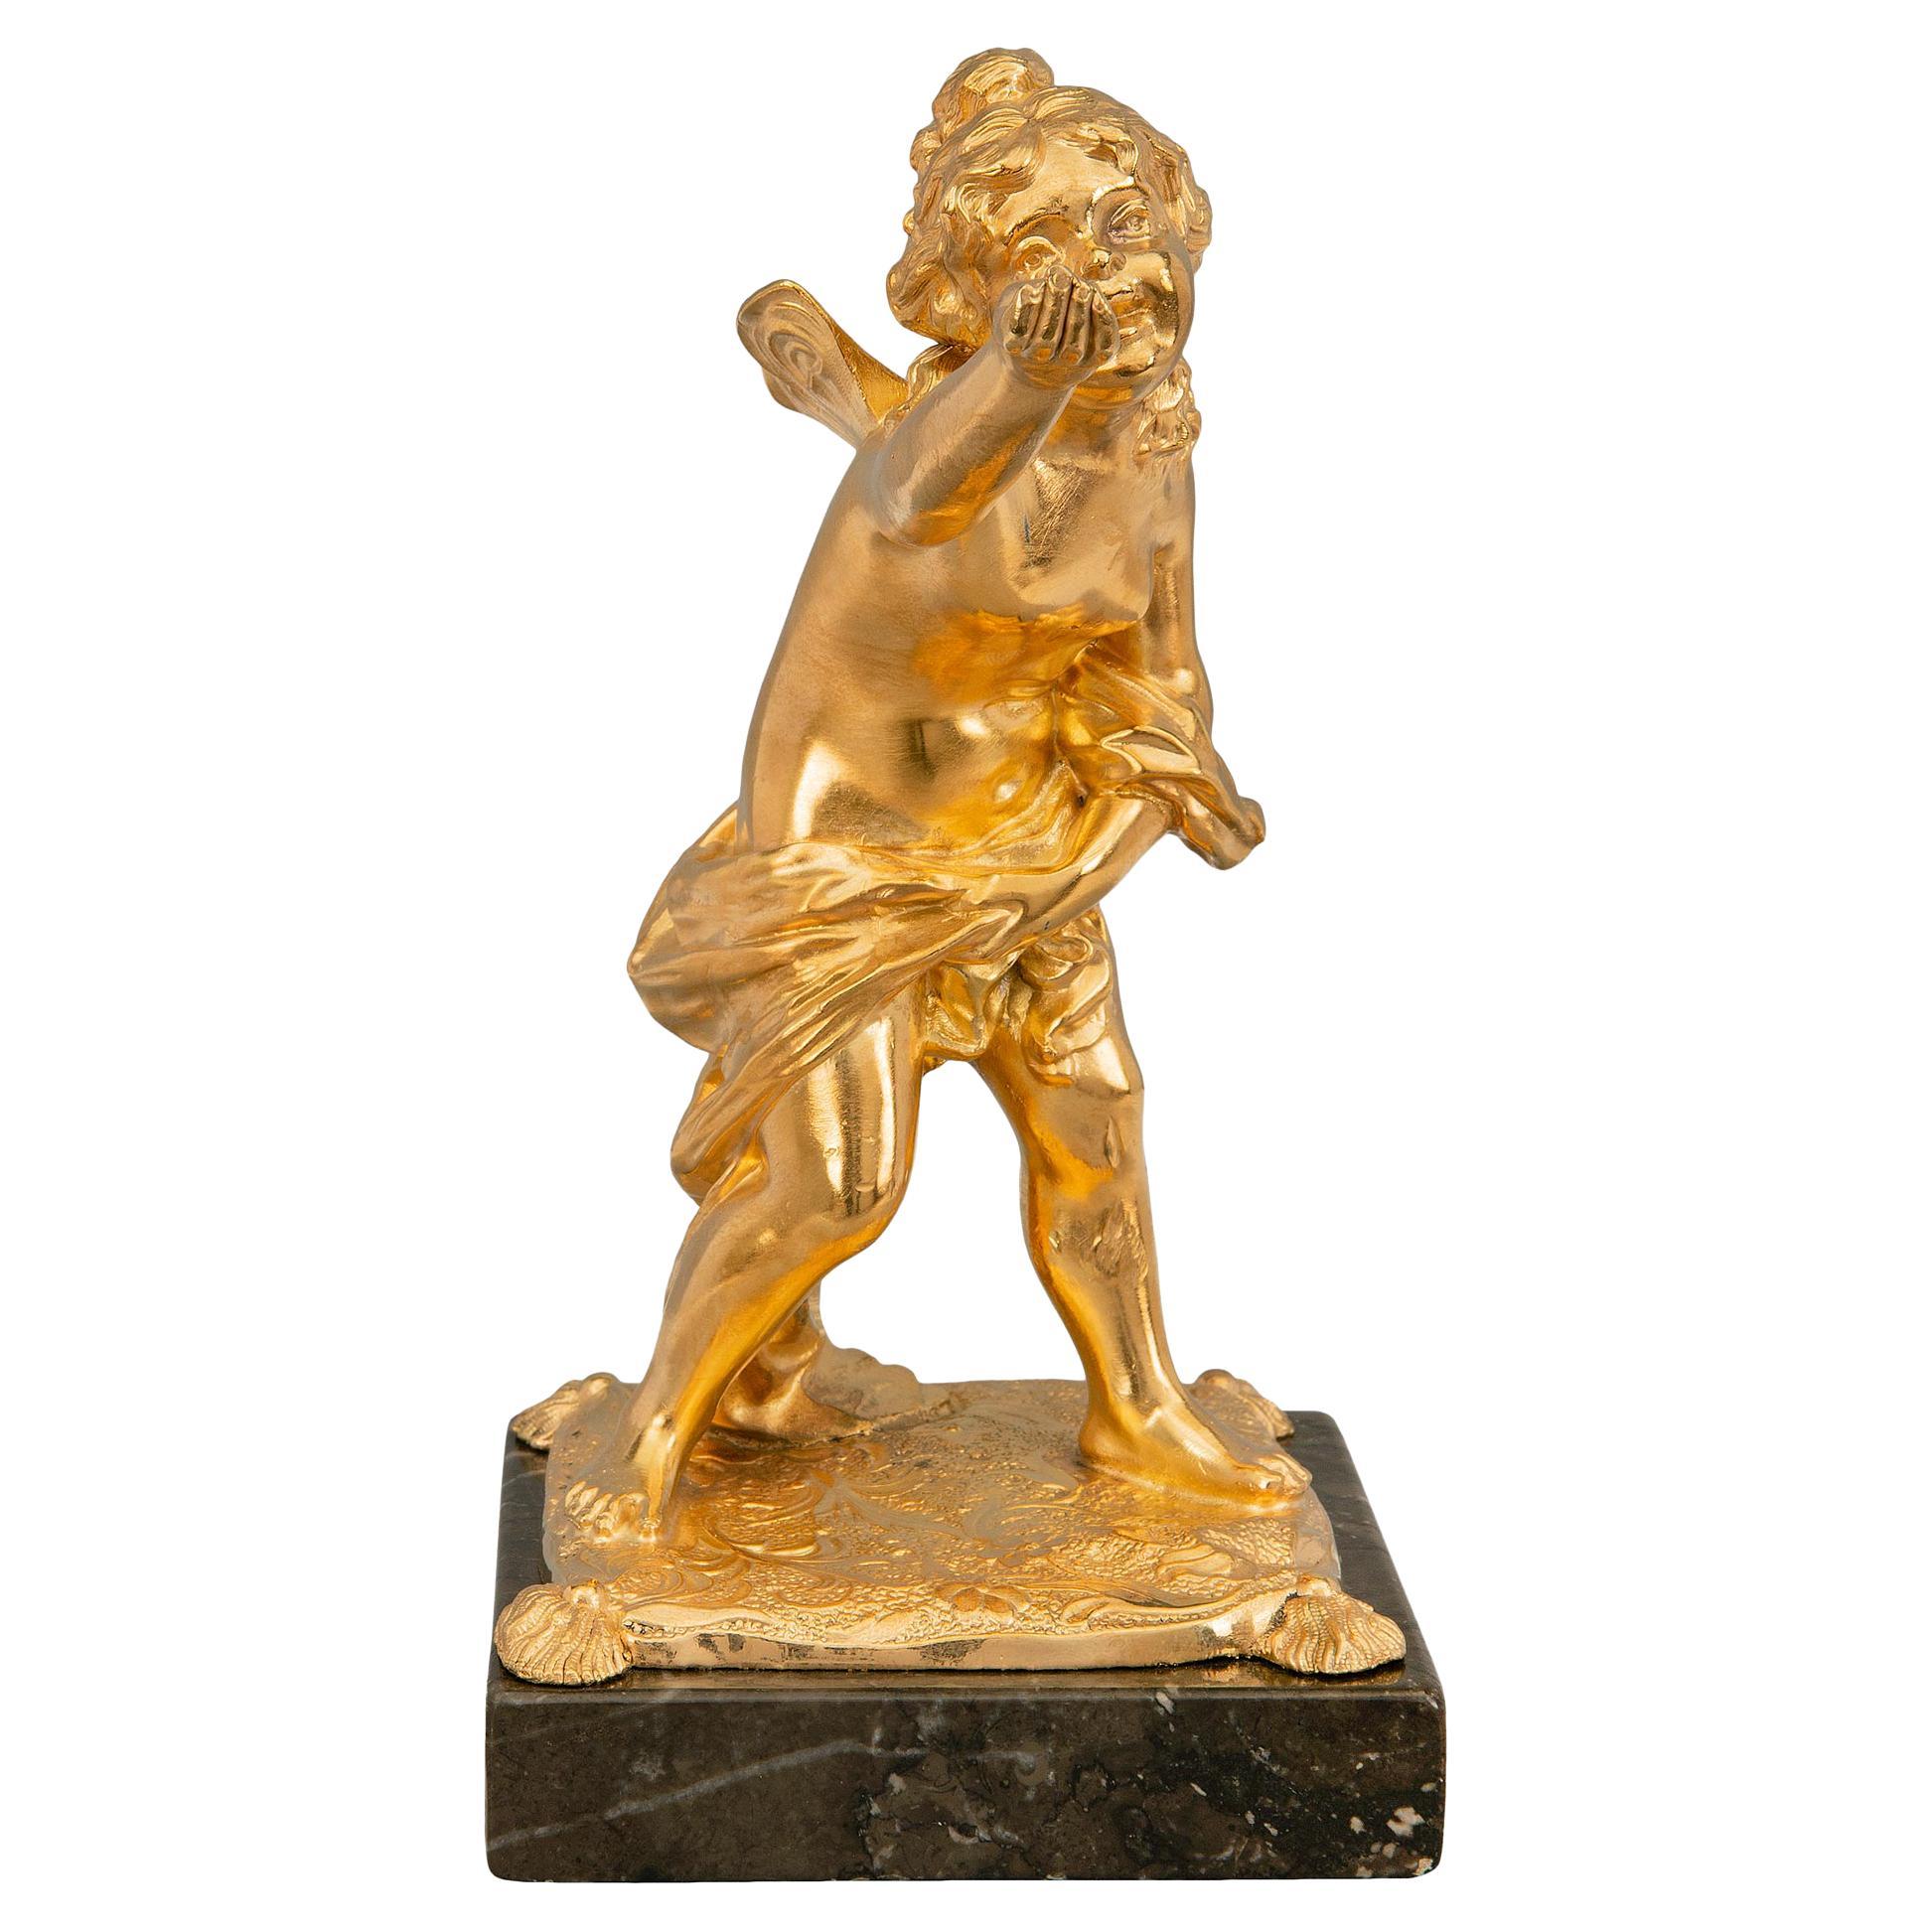  Statue française du XIXe siècle de style Louis XVI en bronze doré et marbre